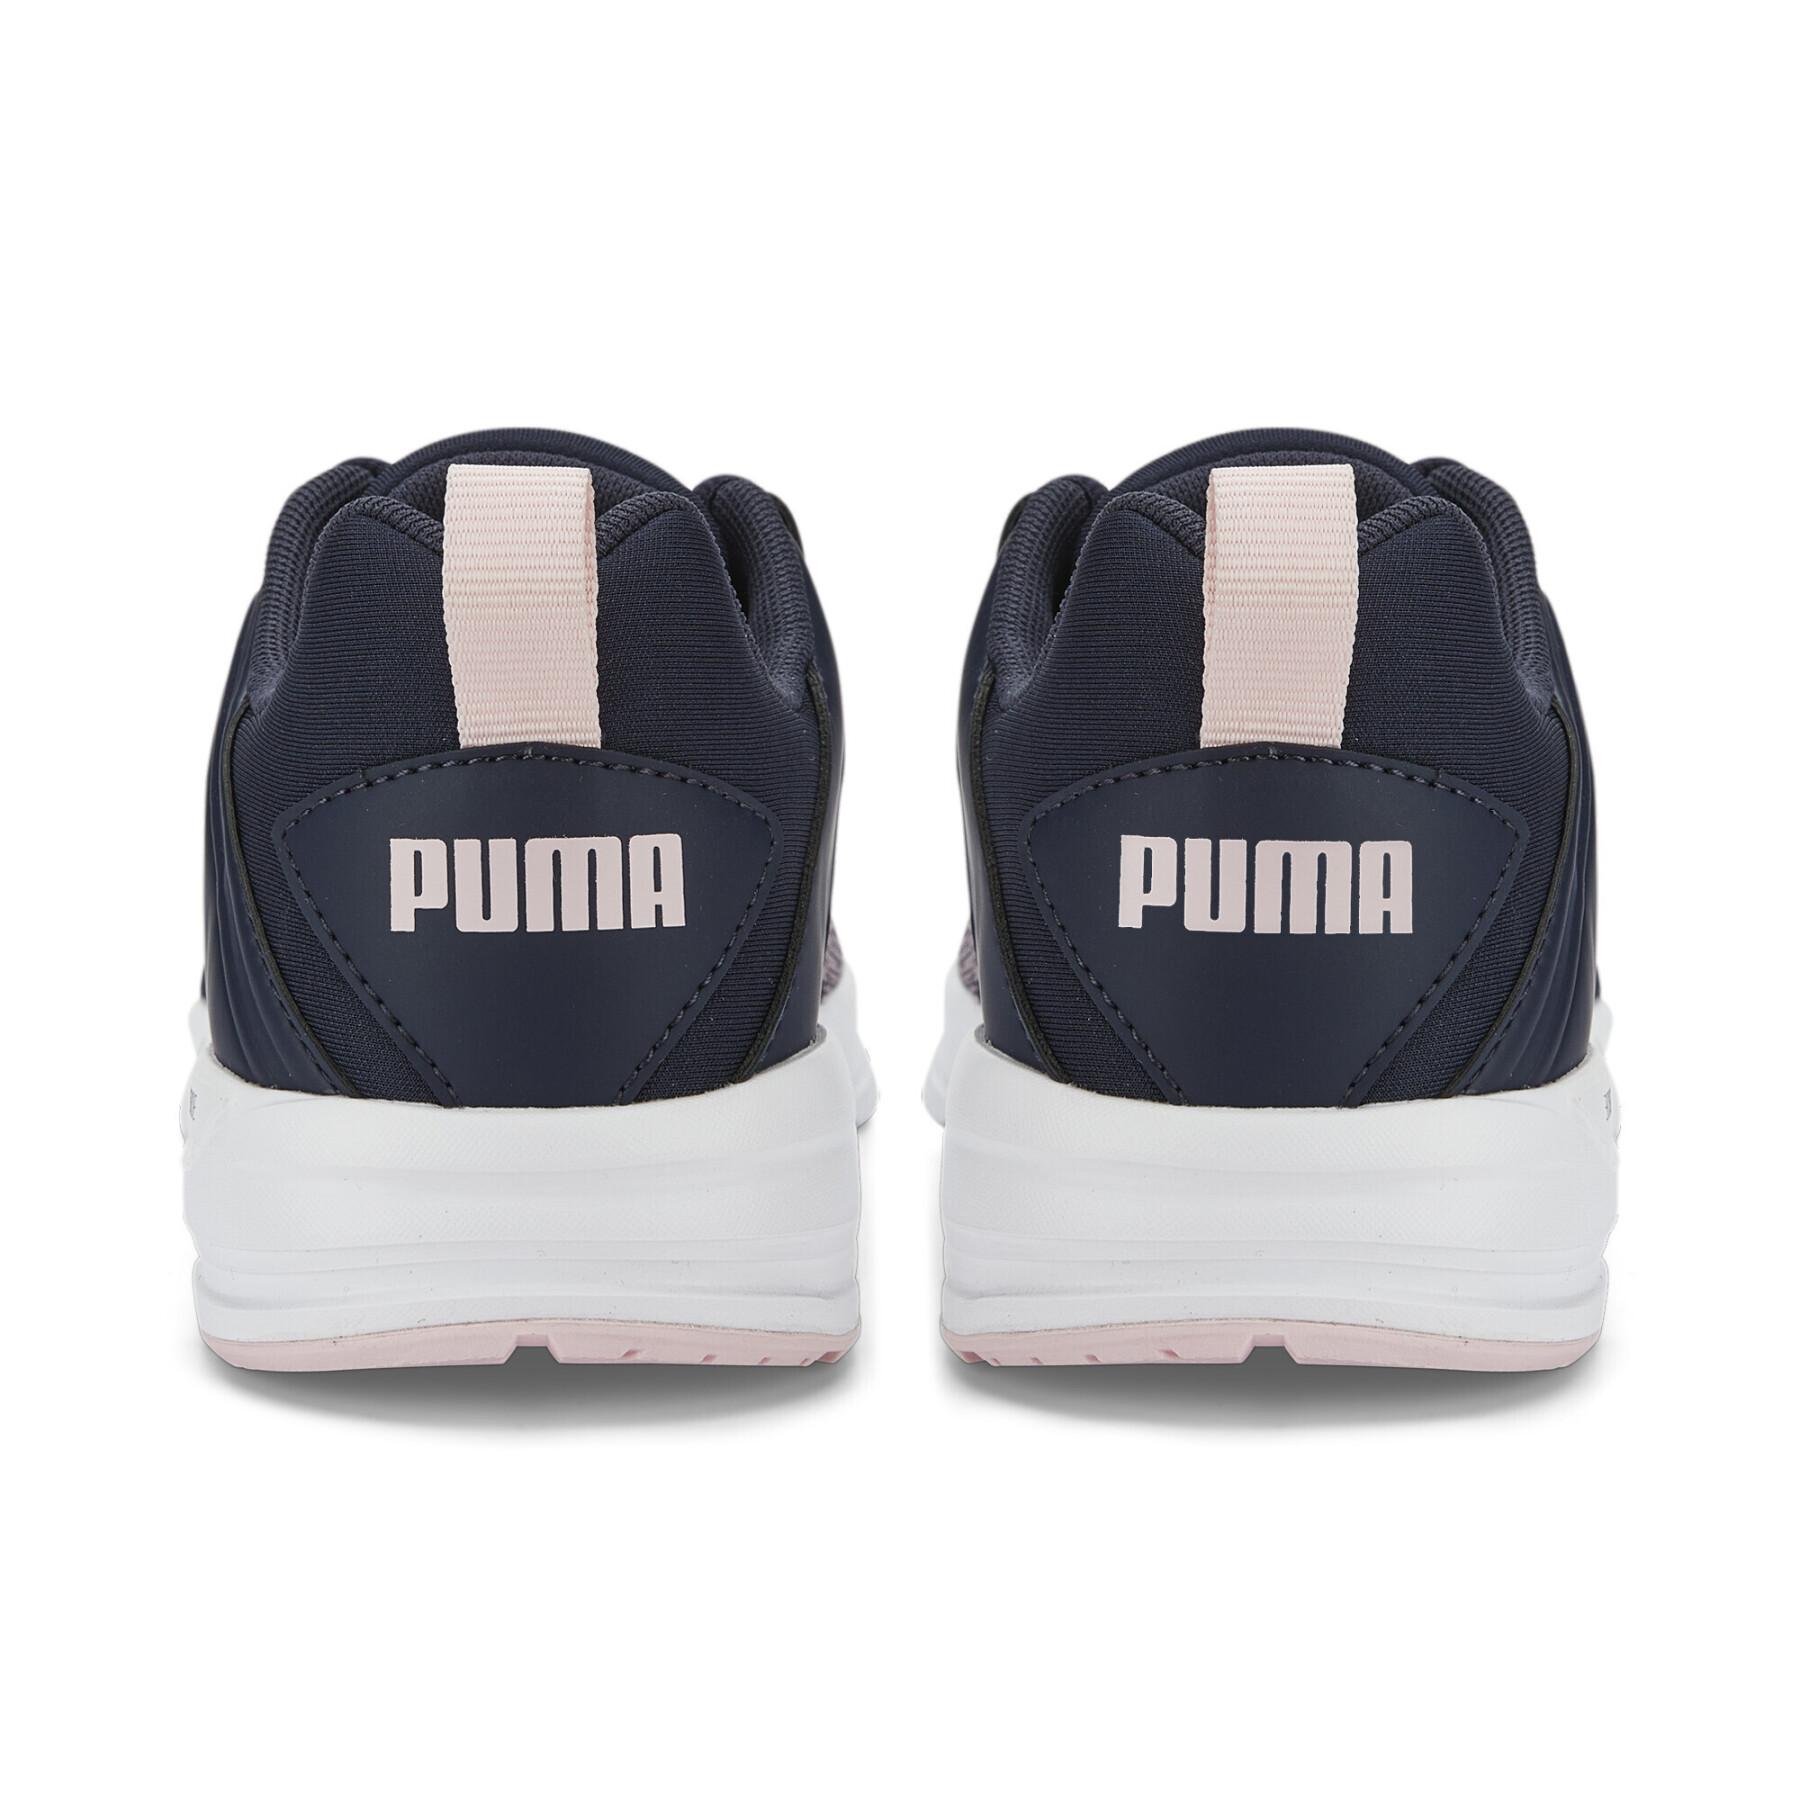 Children's sneakers Puma Comet 2 Alt